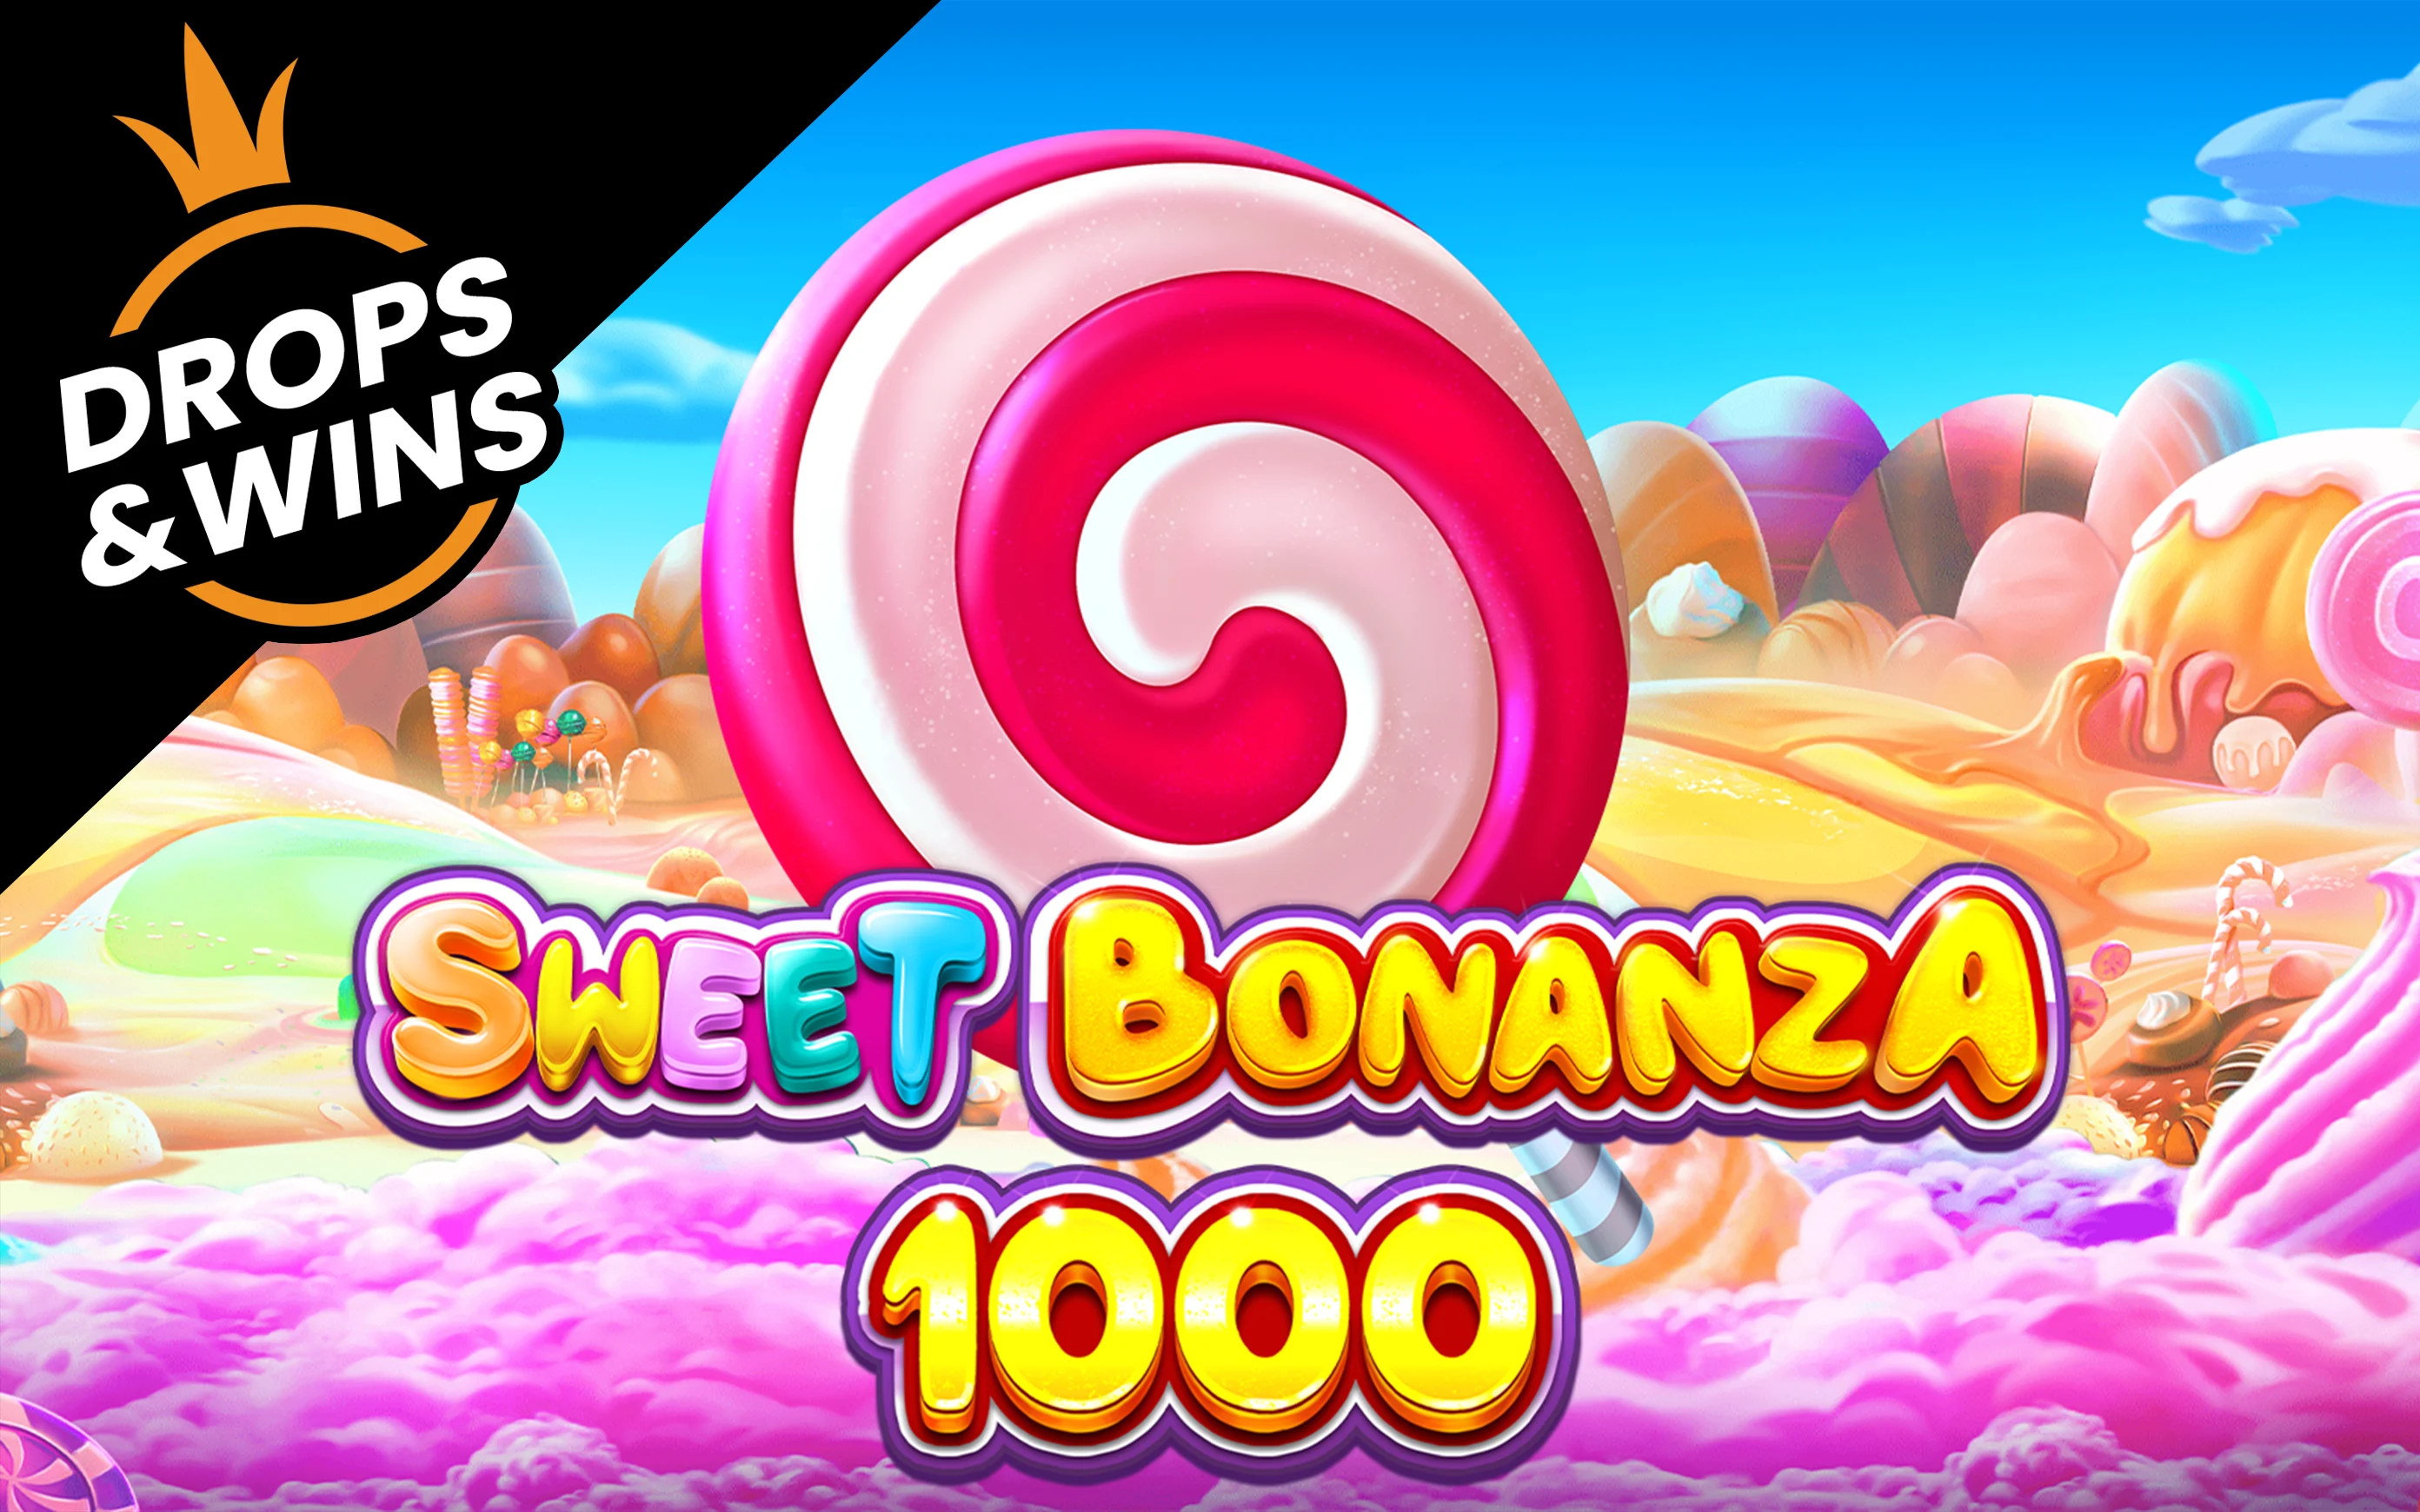 Грайте у Sweet Bonanza 1000 в онлайн-казино Starcasino.be